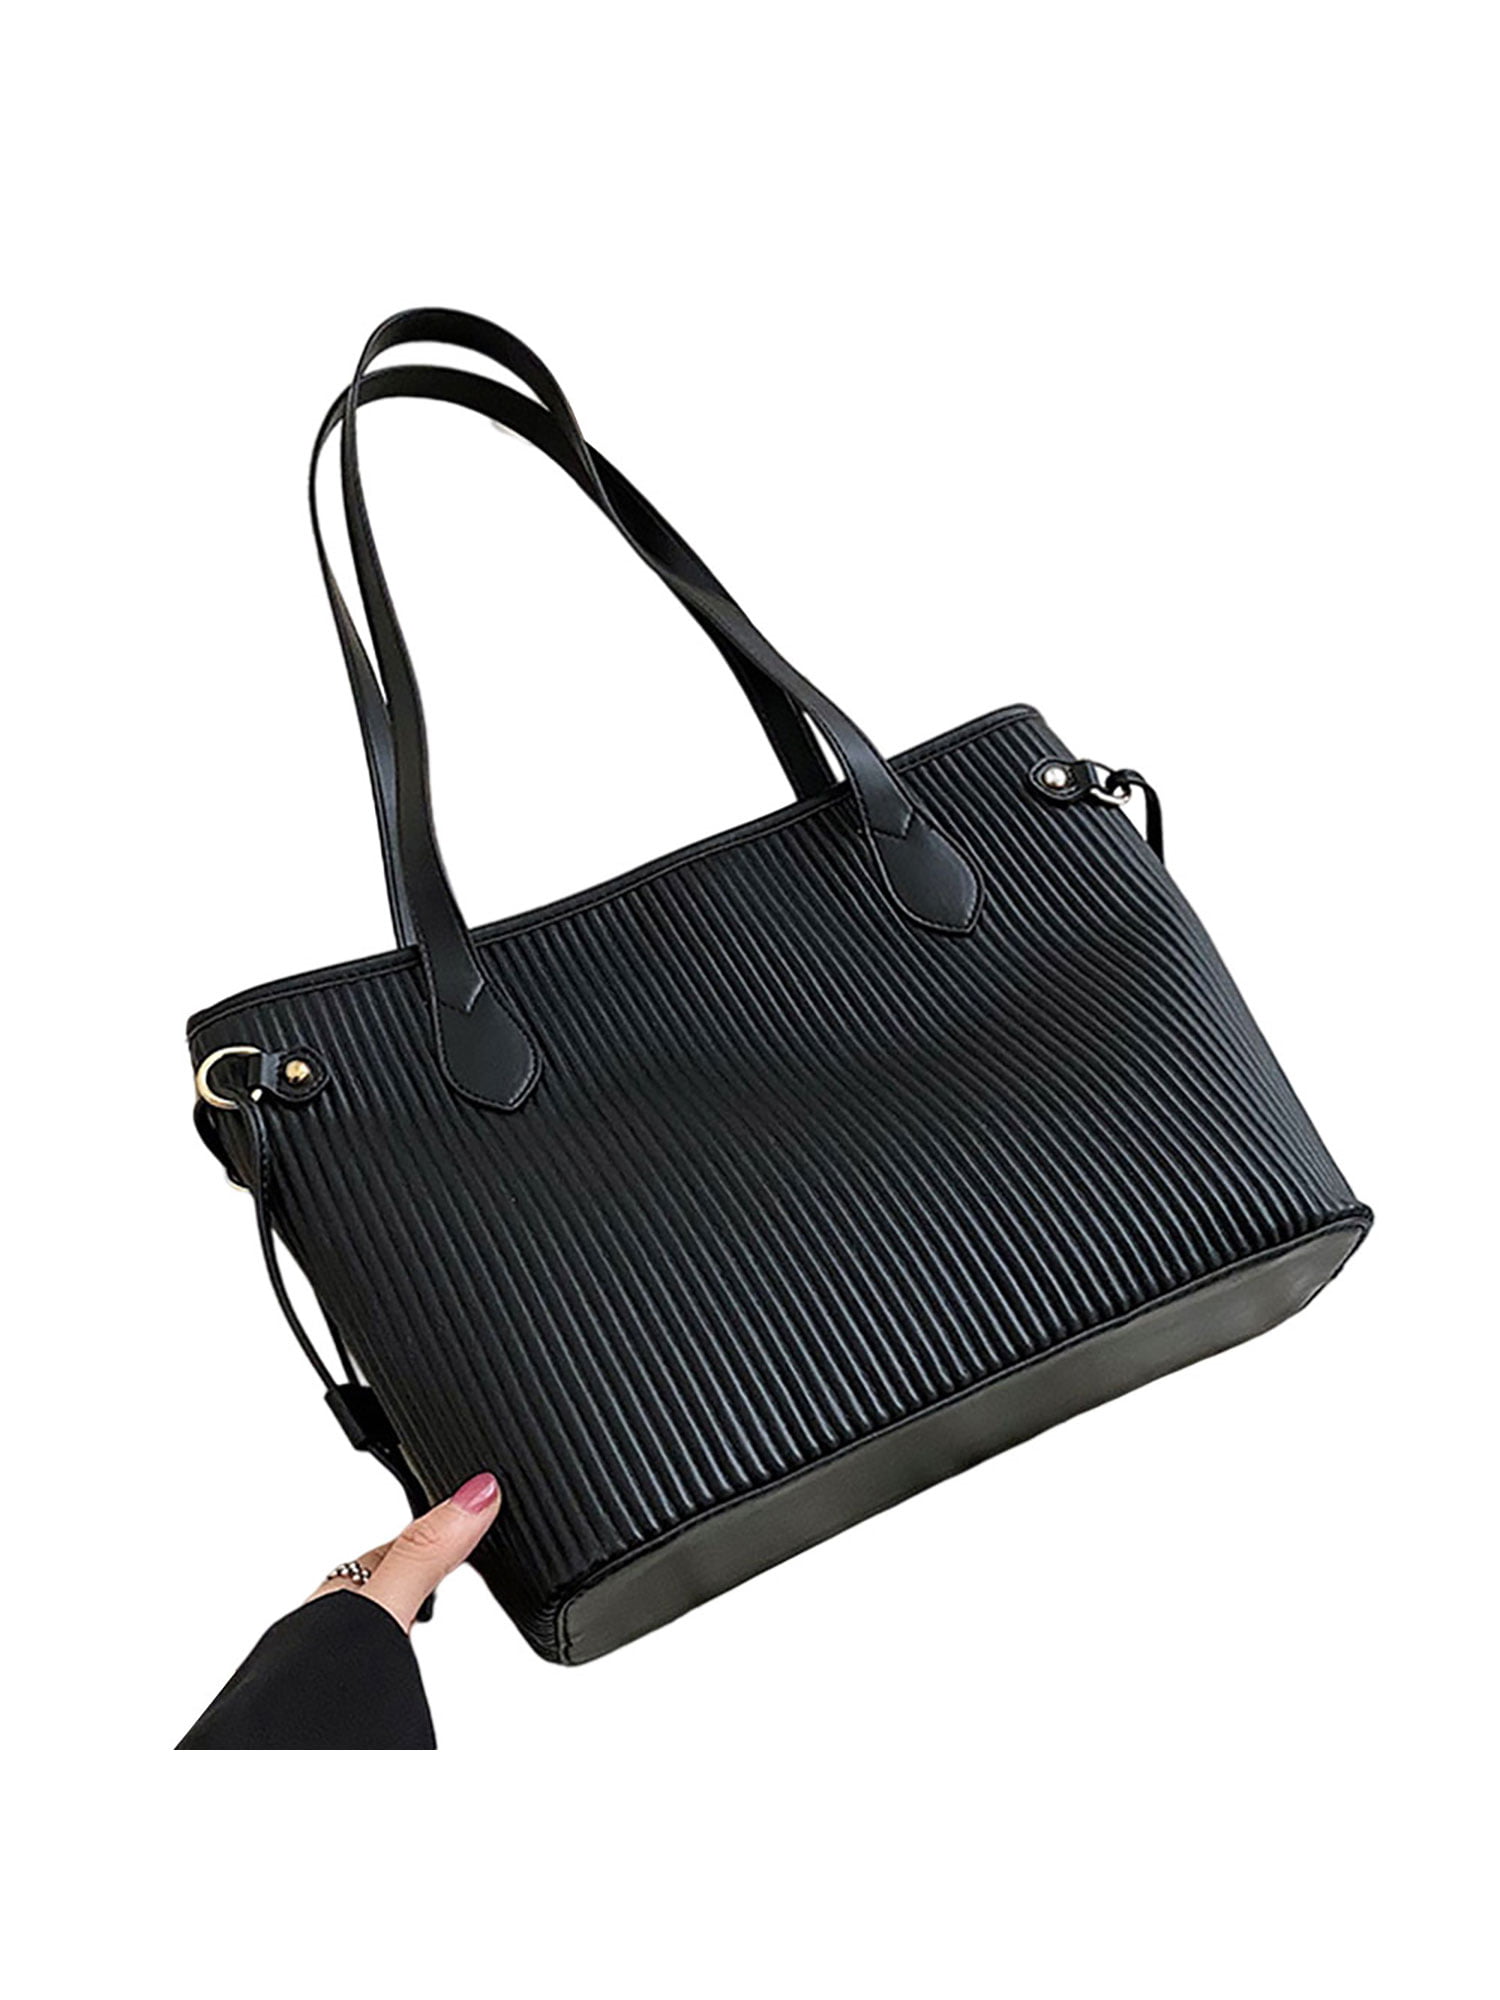 Womens Fashion Lady Handbag Shoulder Crossbody Bag Black Big Travel Bags Totes 